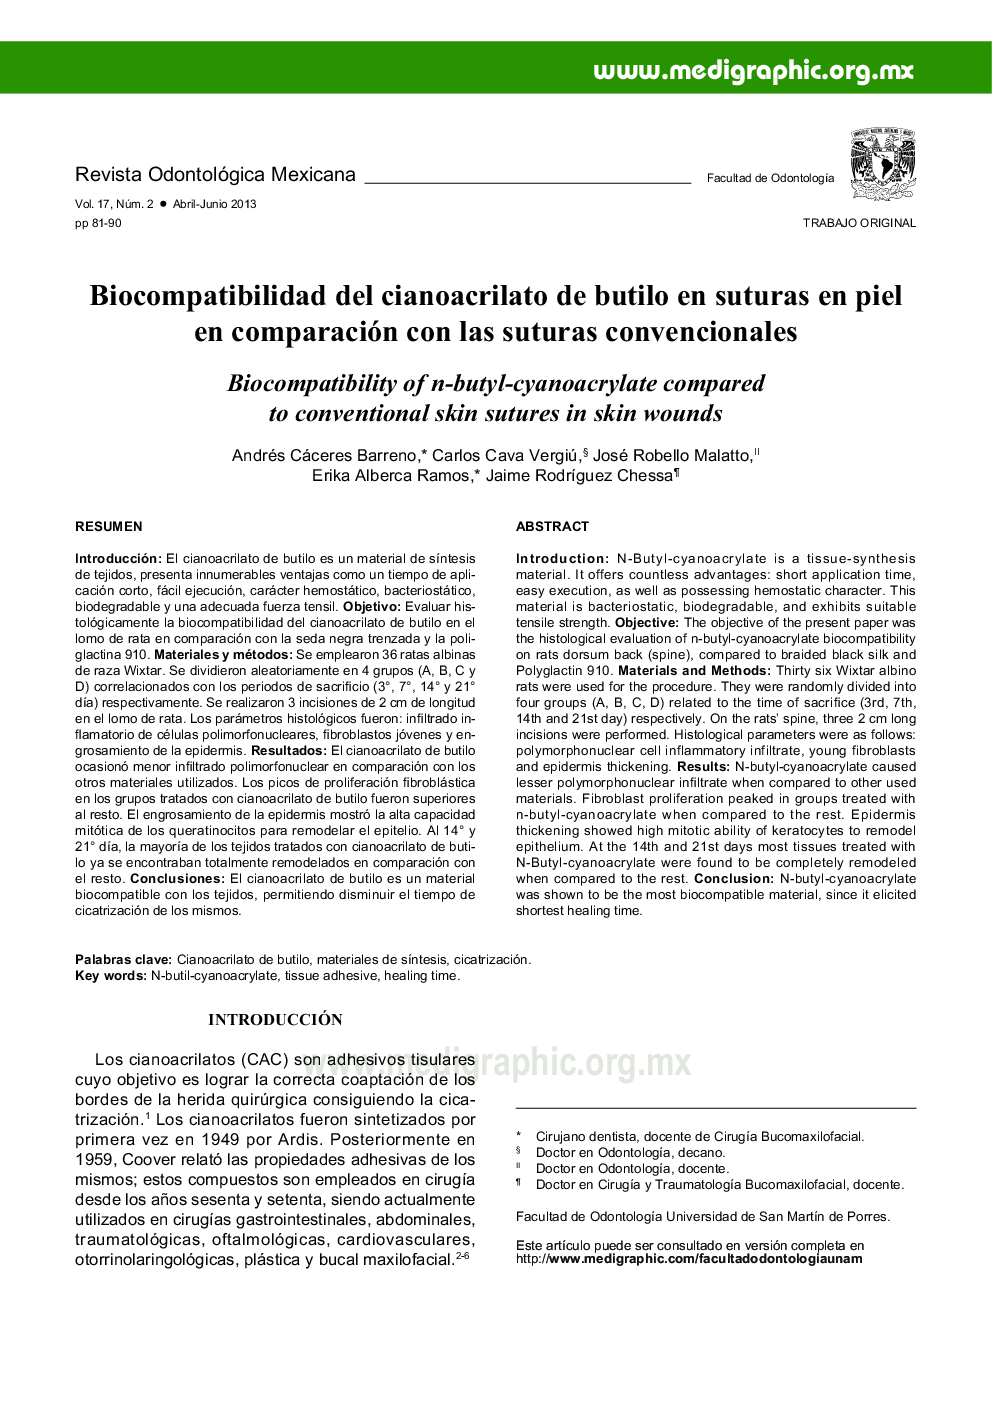 Biocompatibilidad del cianoacrilato de butilo en suturas en piel en comparación con las suturas convencionales 